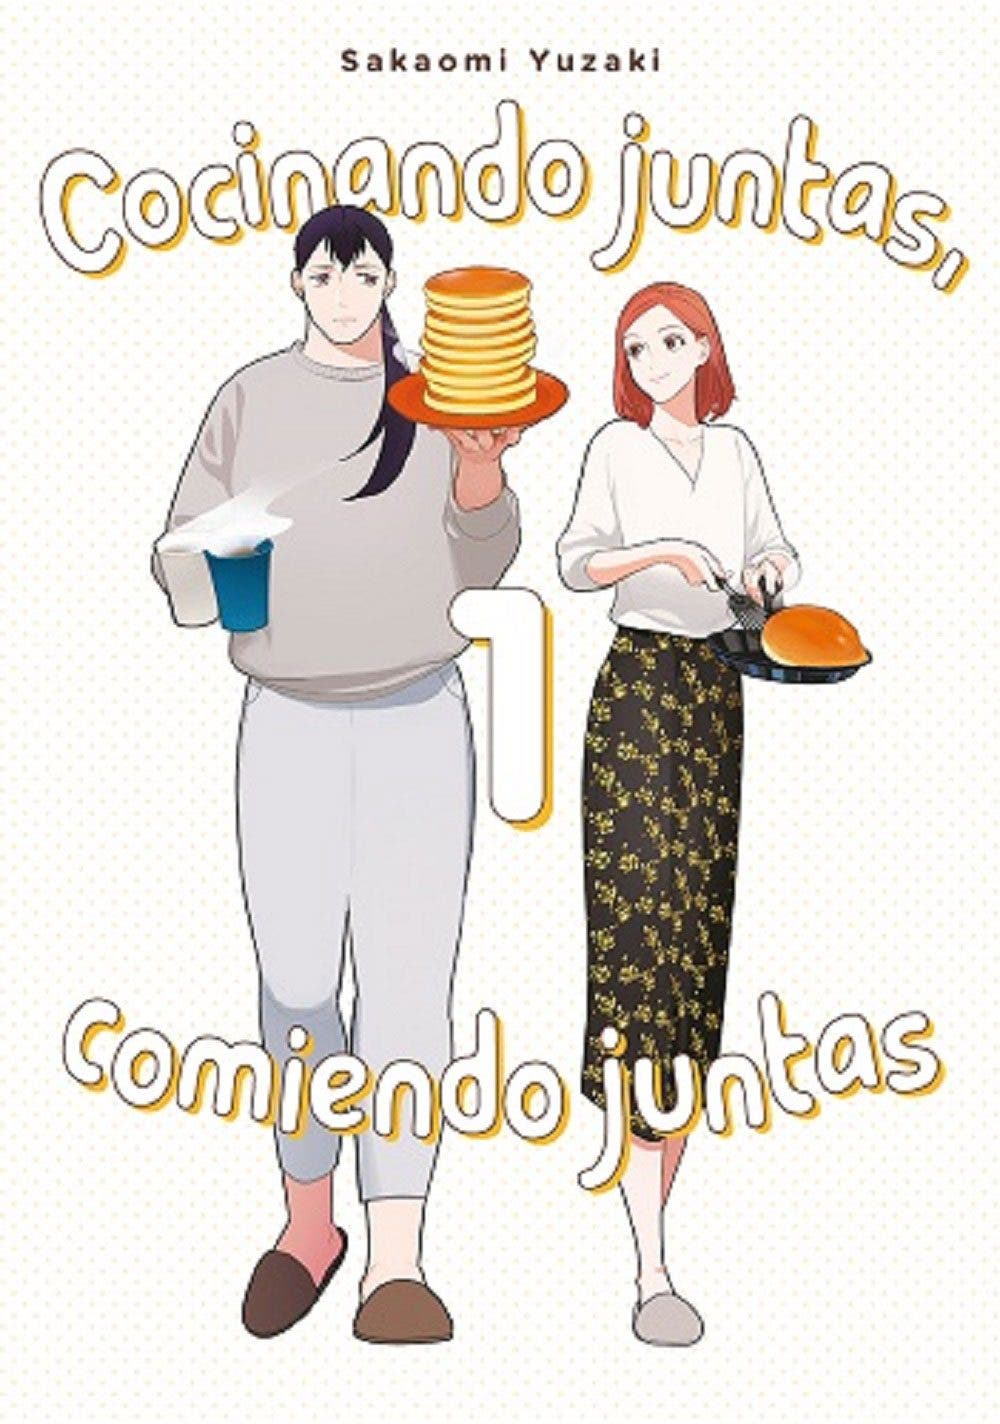 Portada del manga "Cocinando juntas, comiendo juntas"